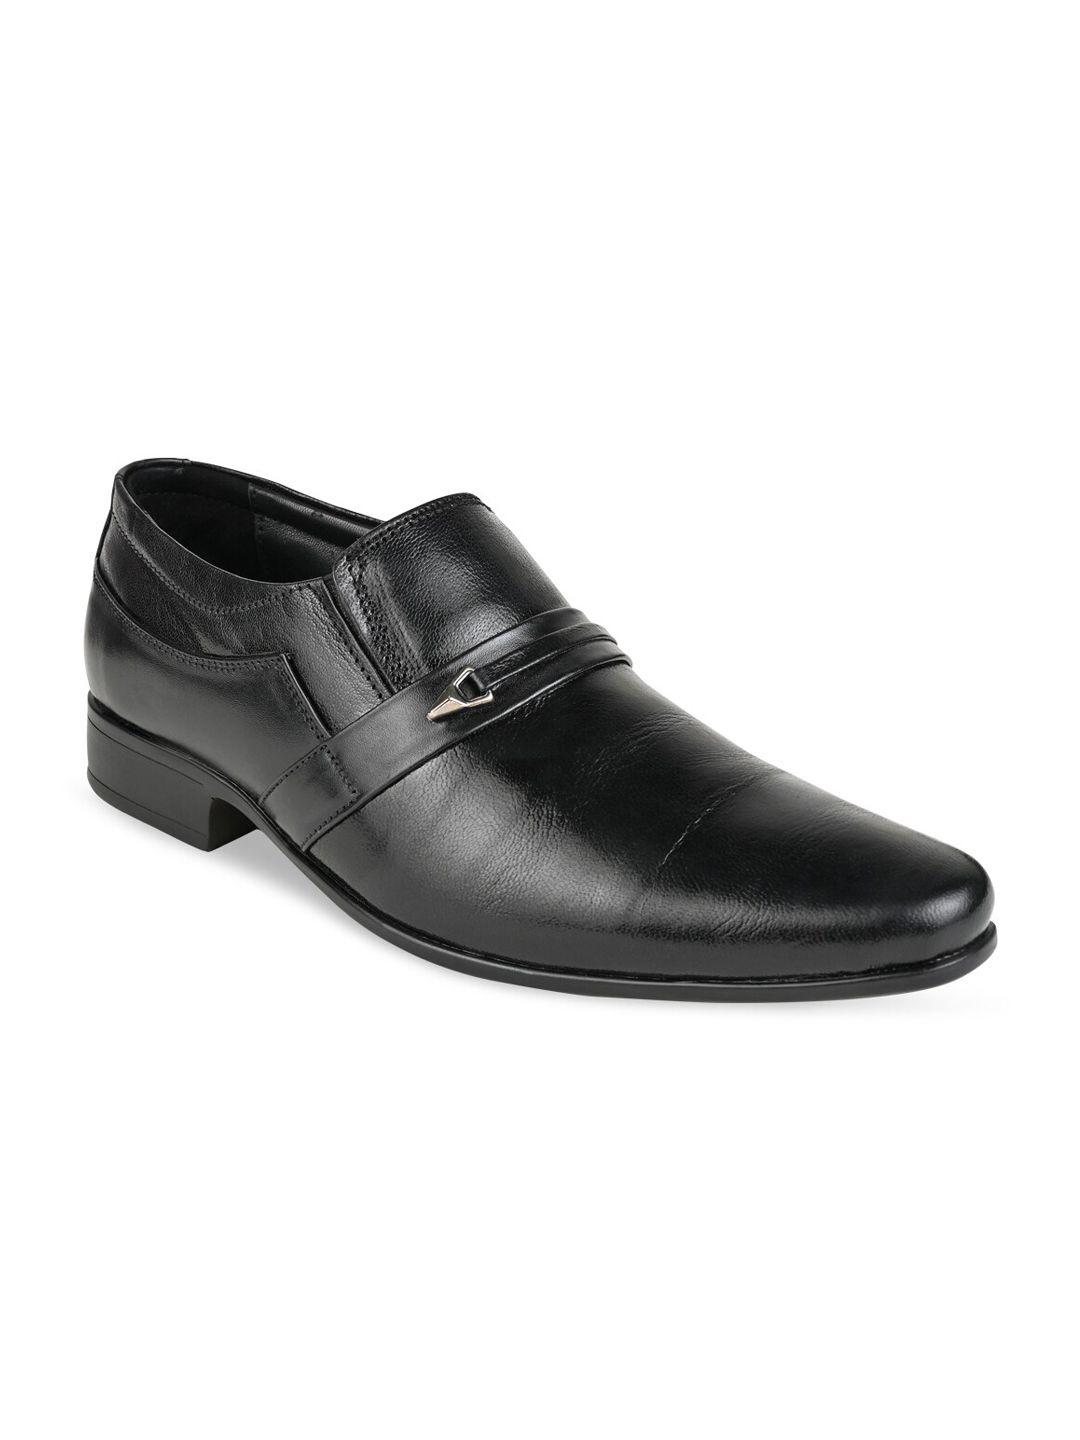 regal-men-black-solid-formal-slip-on-shoes